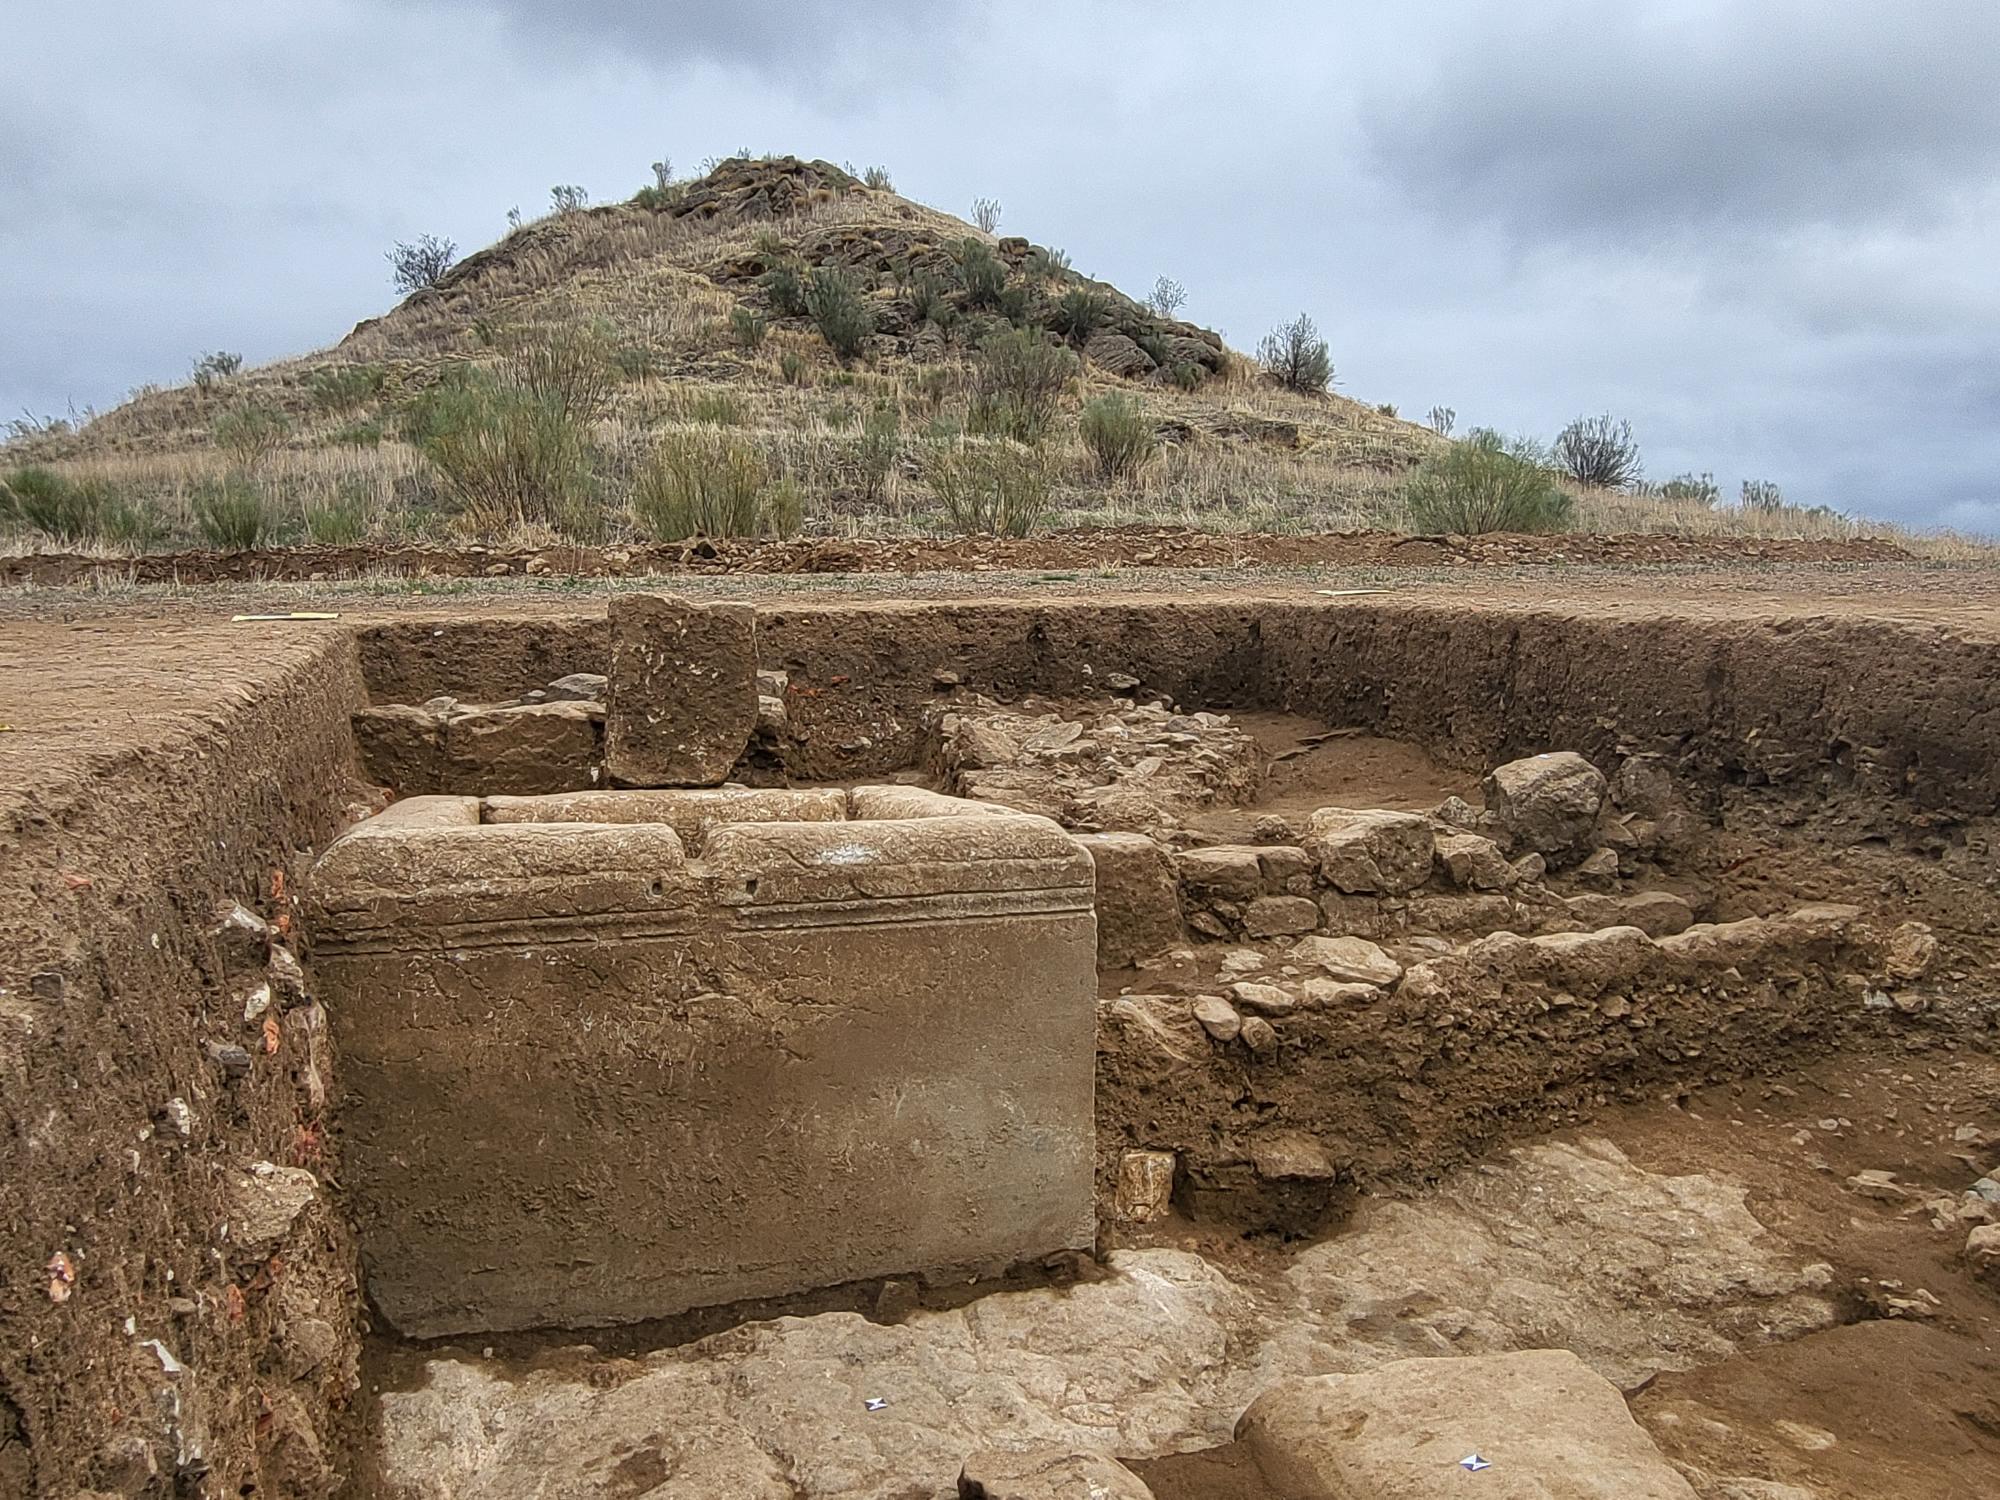 Restos arqueolgicos de una fuente romana hallados en Fuente Obejuna (Crdoba).